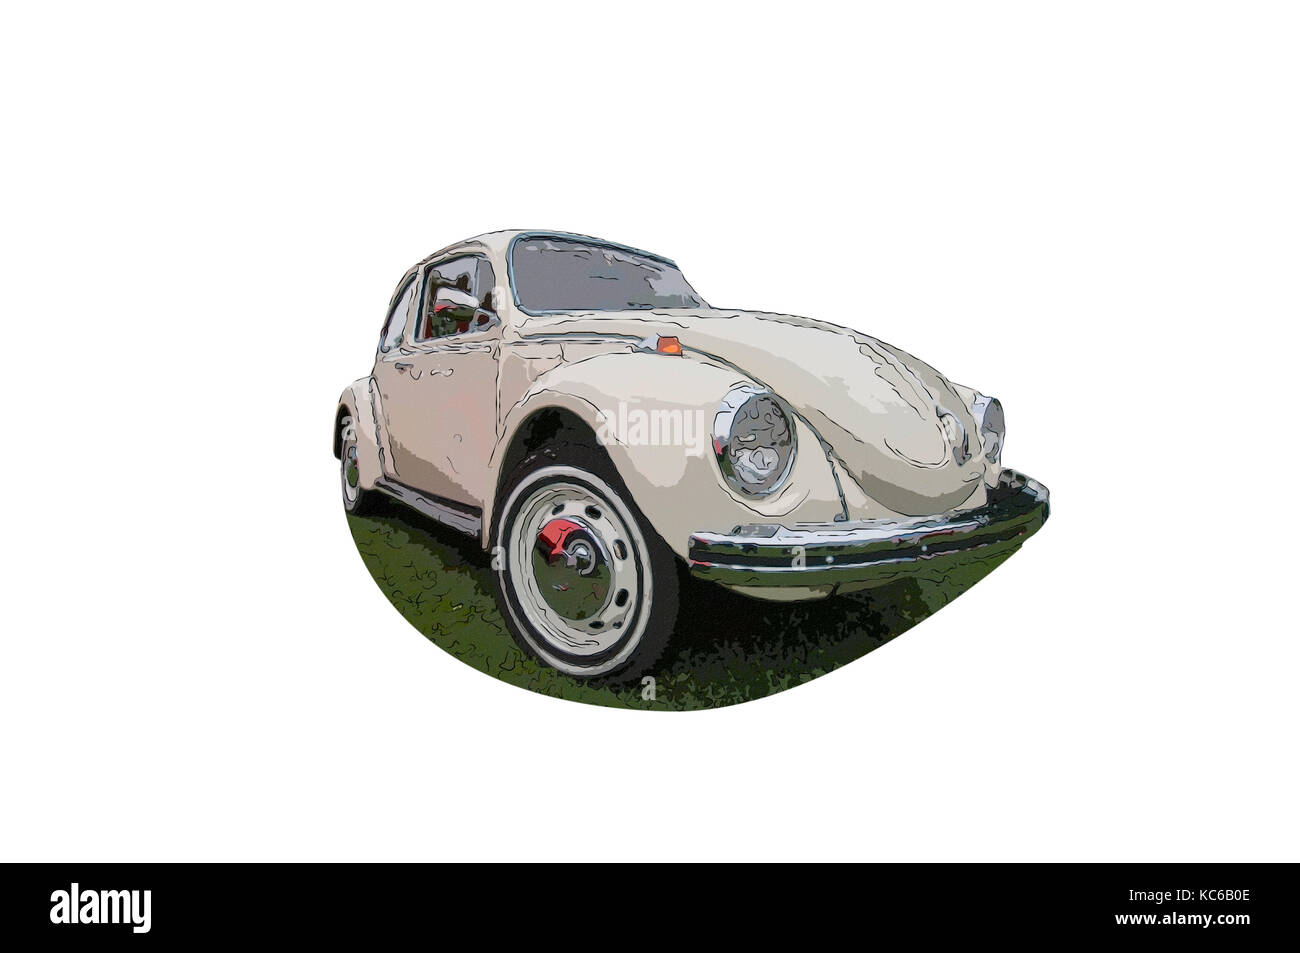 volkswagen beetle art Stock Photo